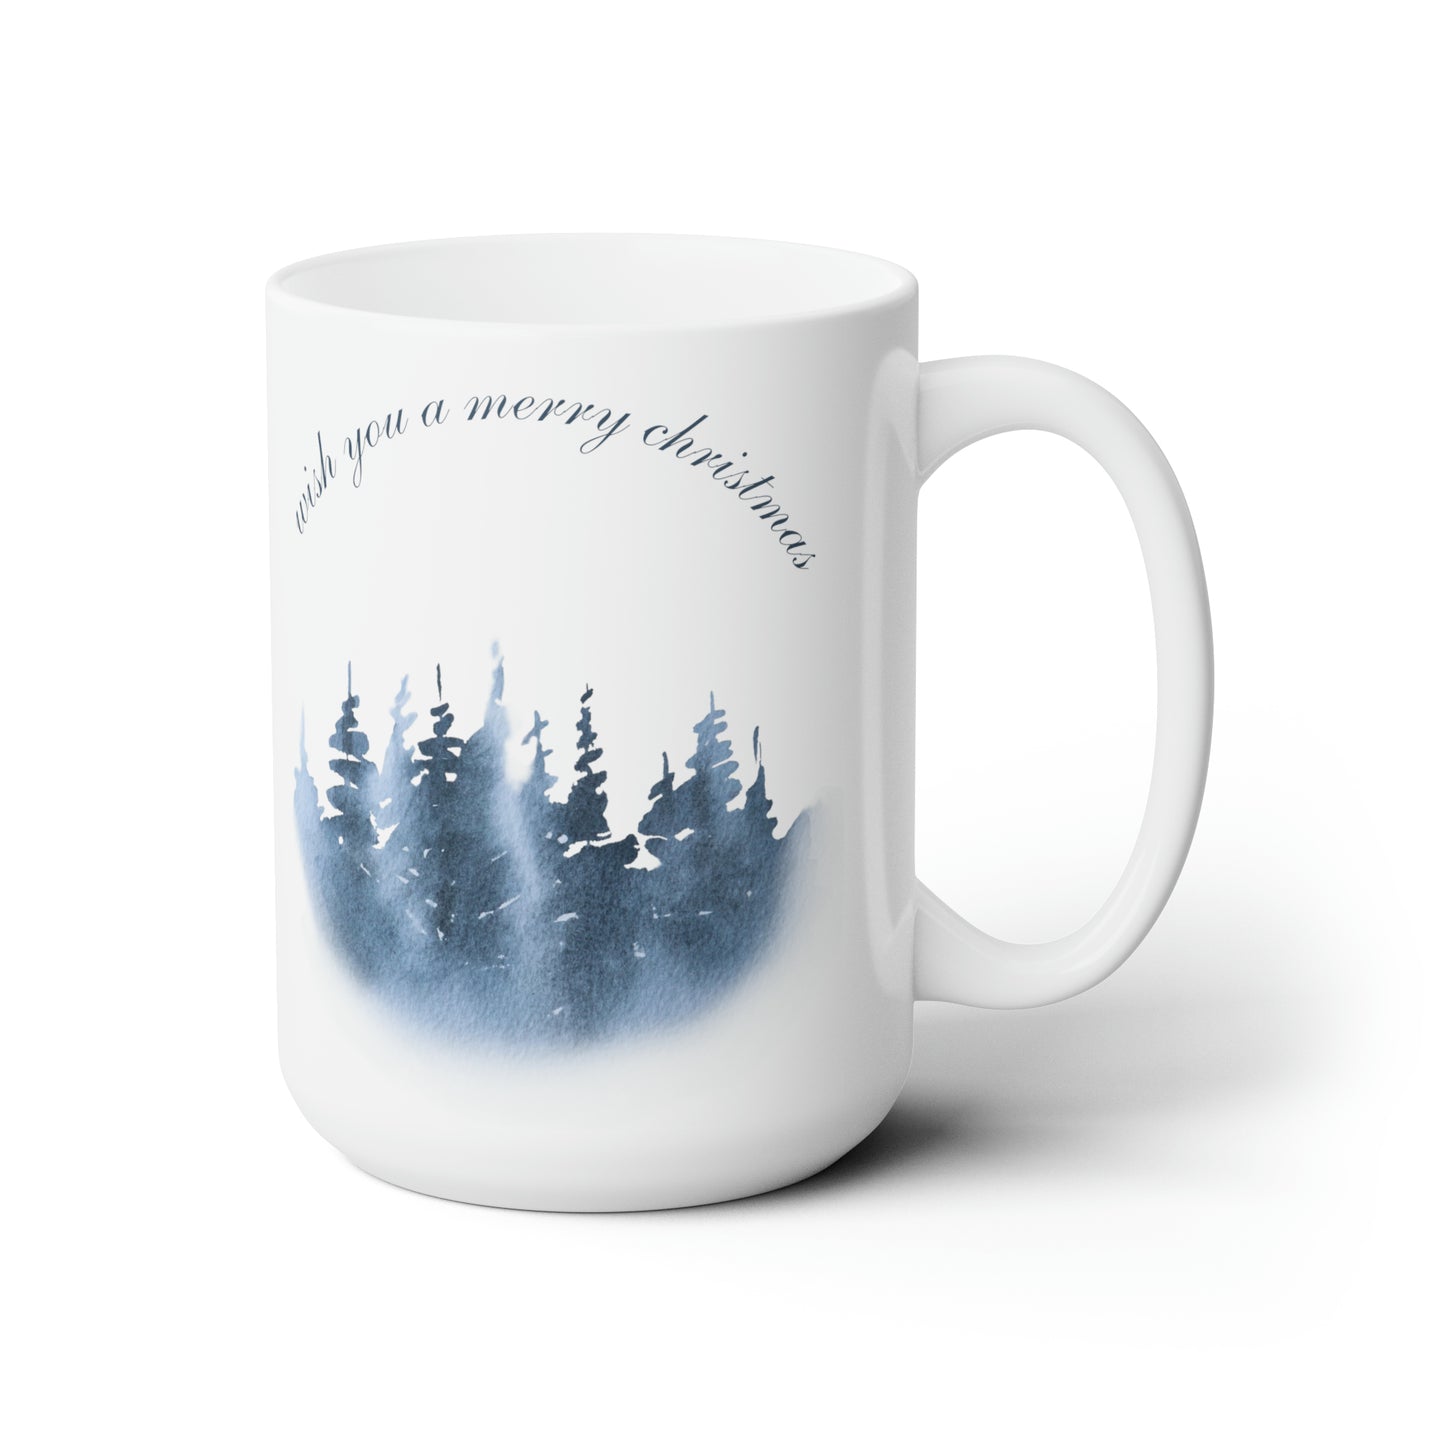 Wish You a Merry Christmas Printed Ceramic Mug, 15oz